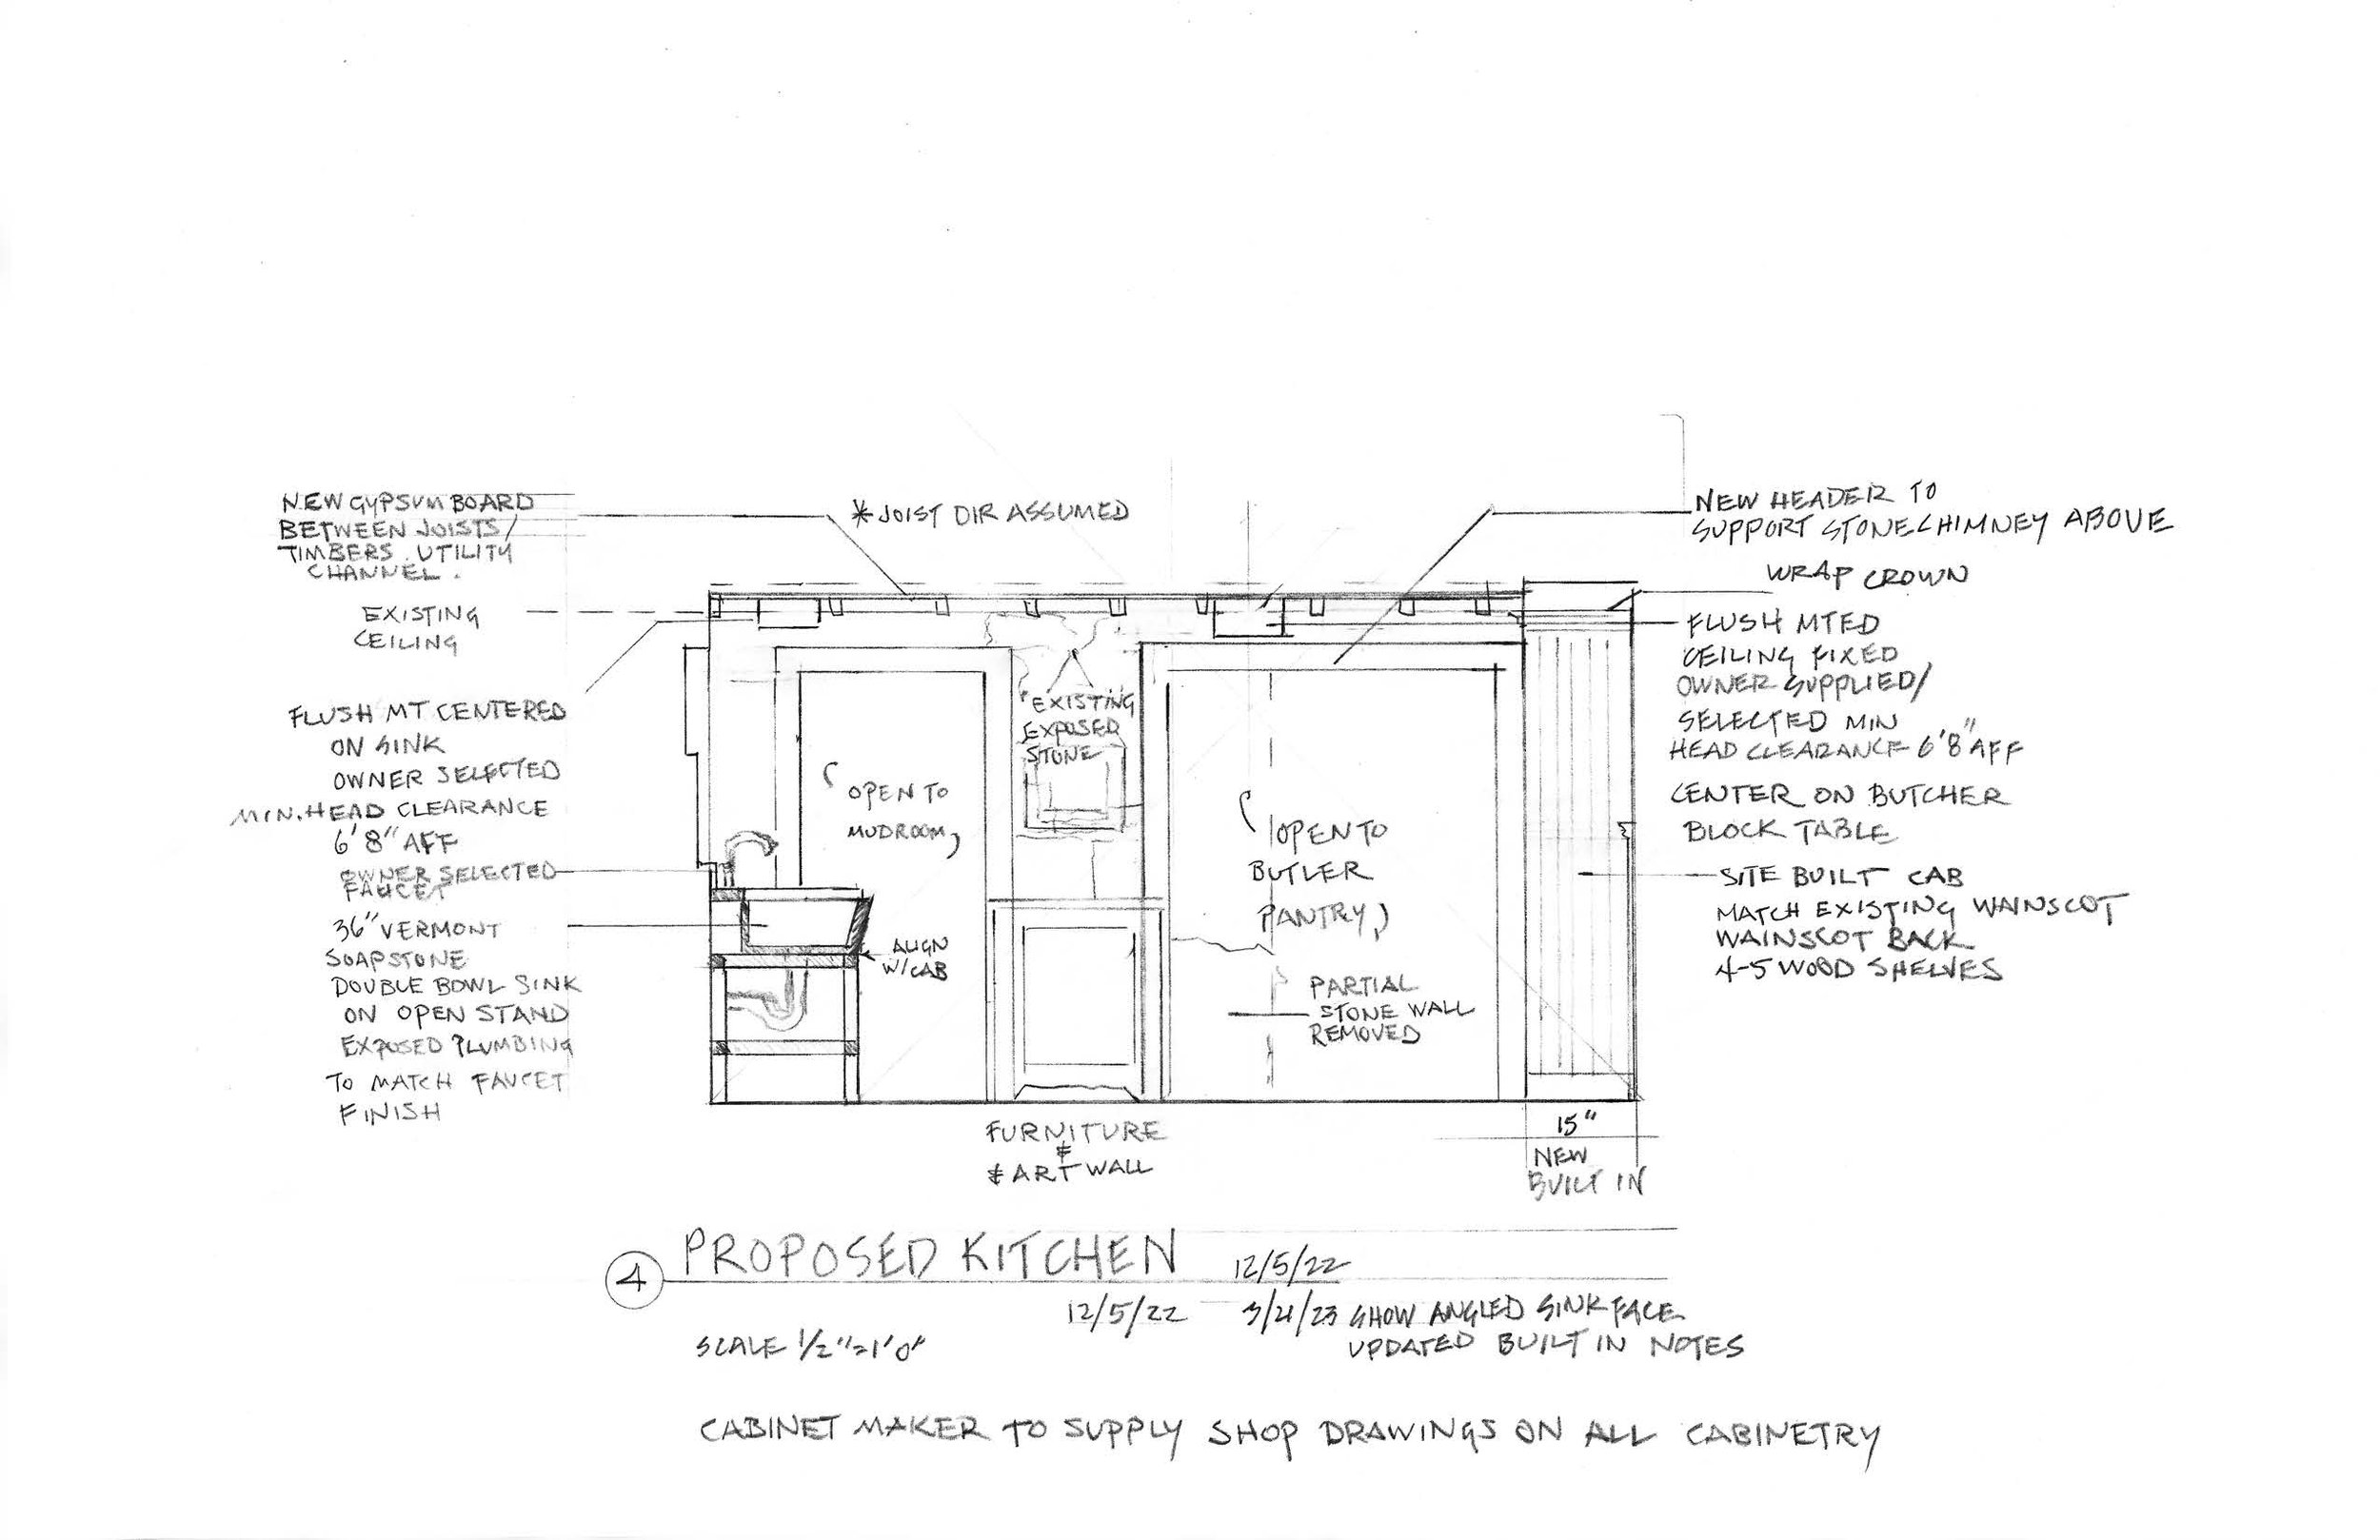 2022.12.05 4 Proposed Kitchen.jpg